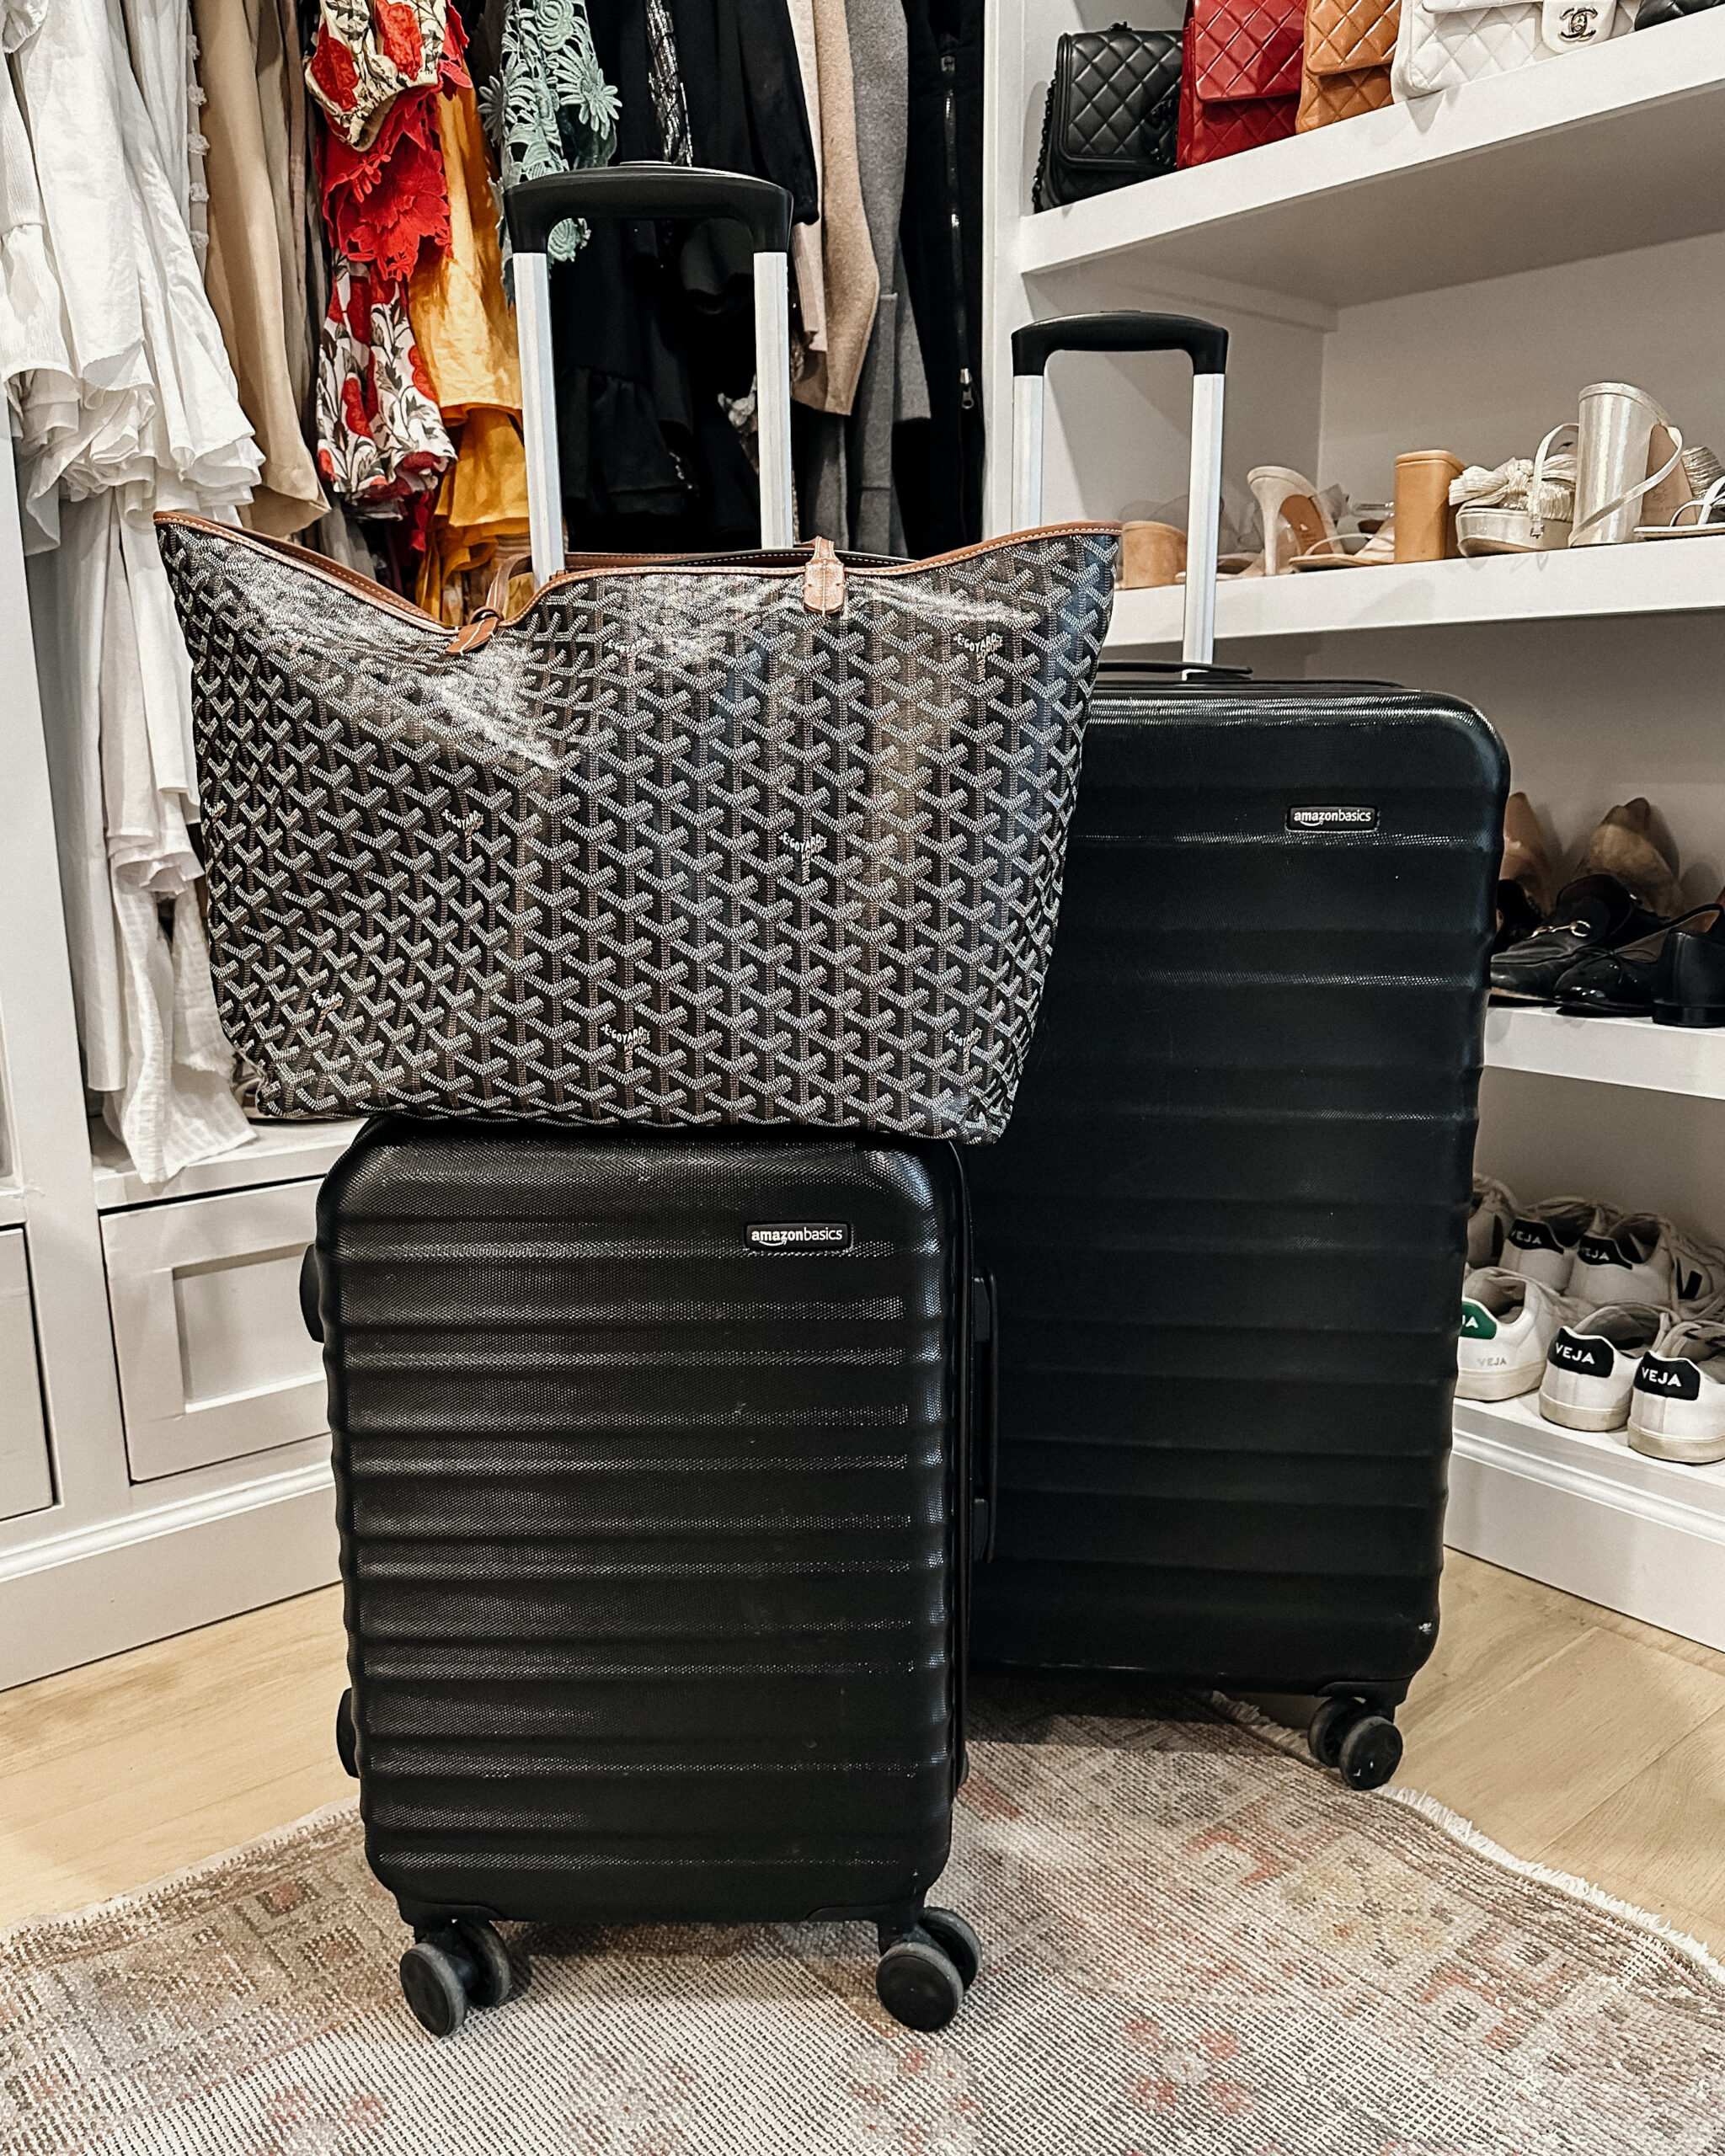 fashion jackson amazon luggage black luggage set goyard GM tote